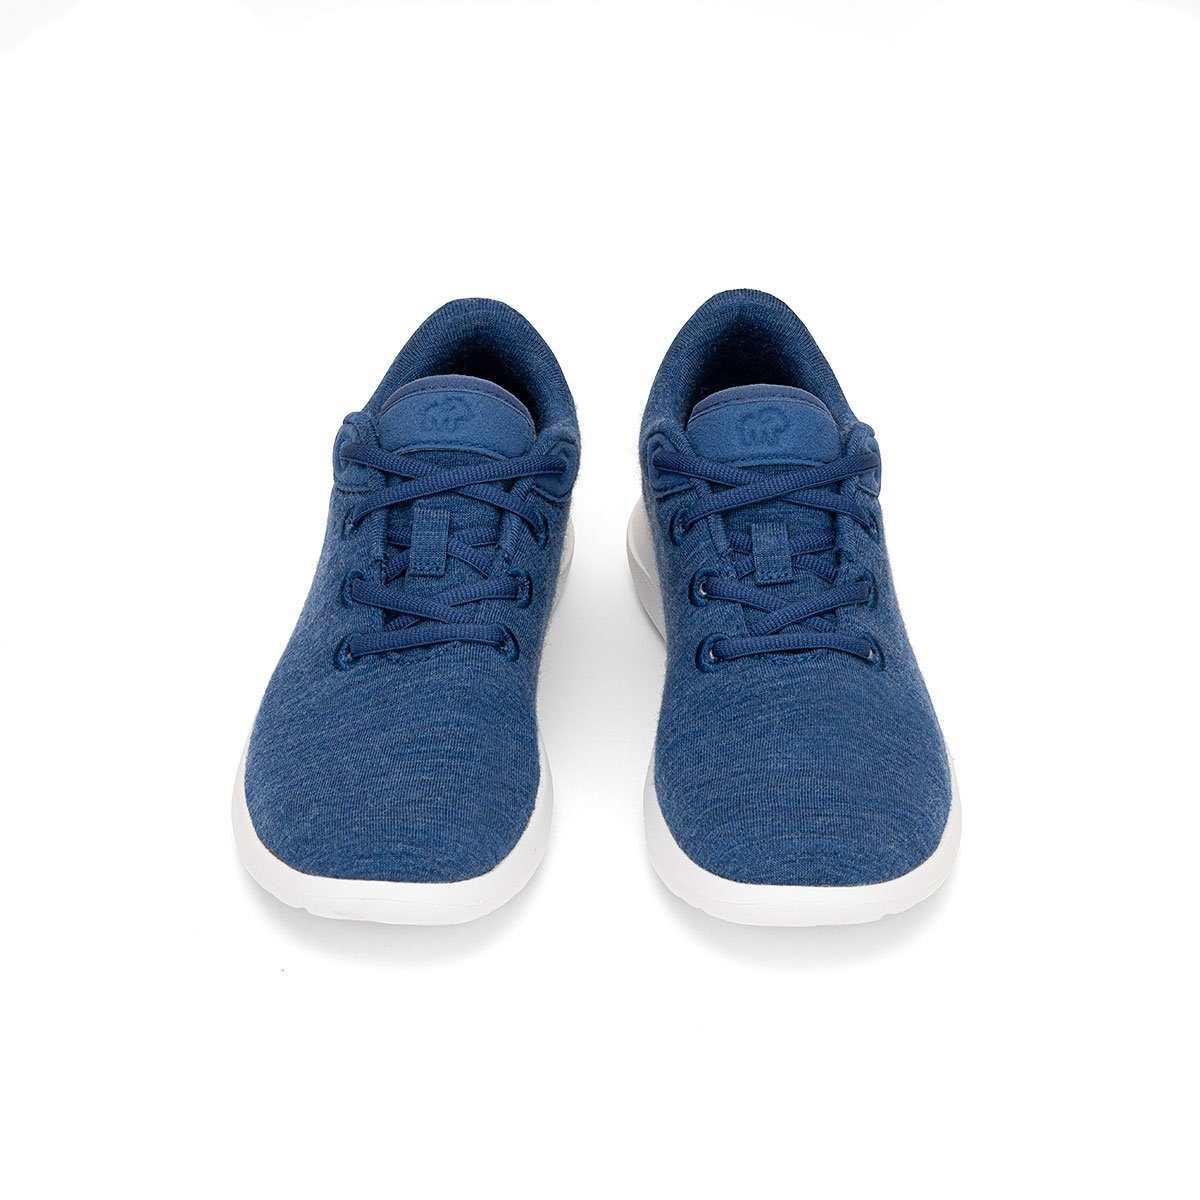 Lace- jeansblau Schuhe Merinowolle - merinos aus Sneaker Damen merinoshoes.de Up, blaue Bequeme weicher Sportschuhe atmungsaktive